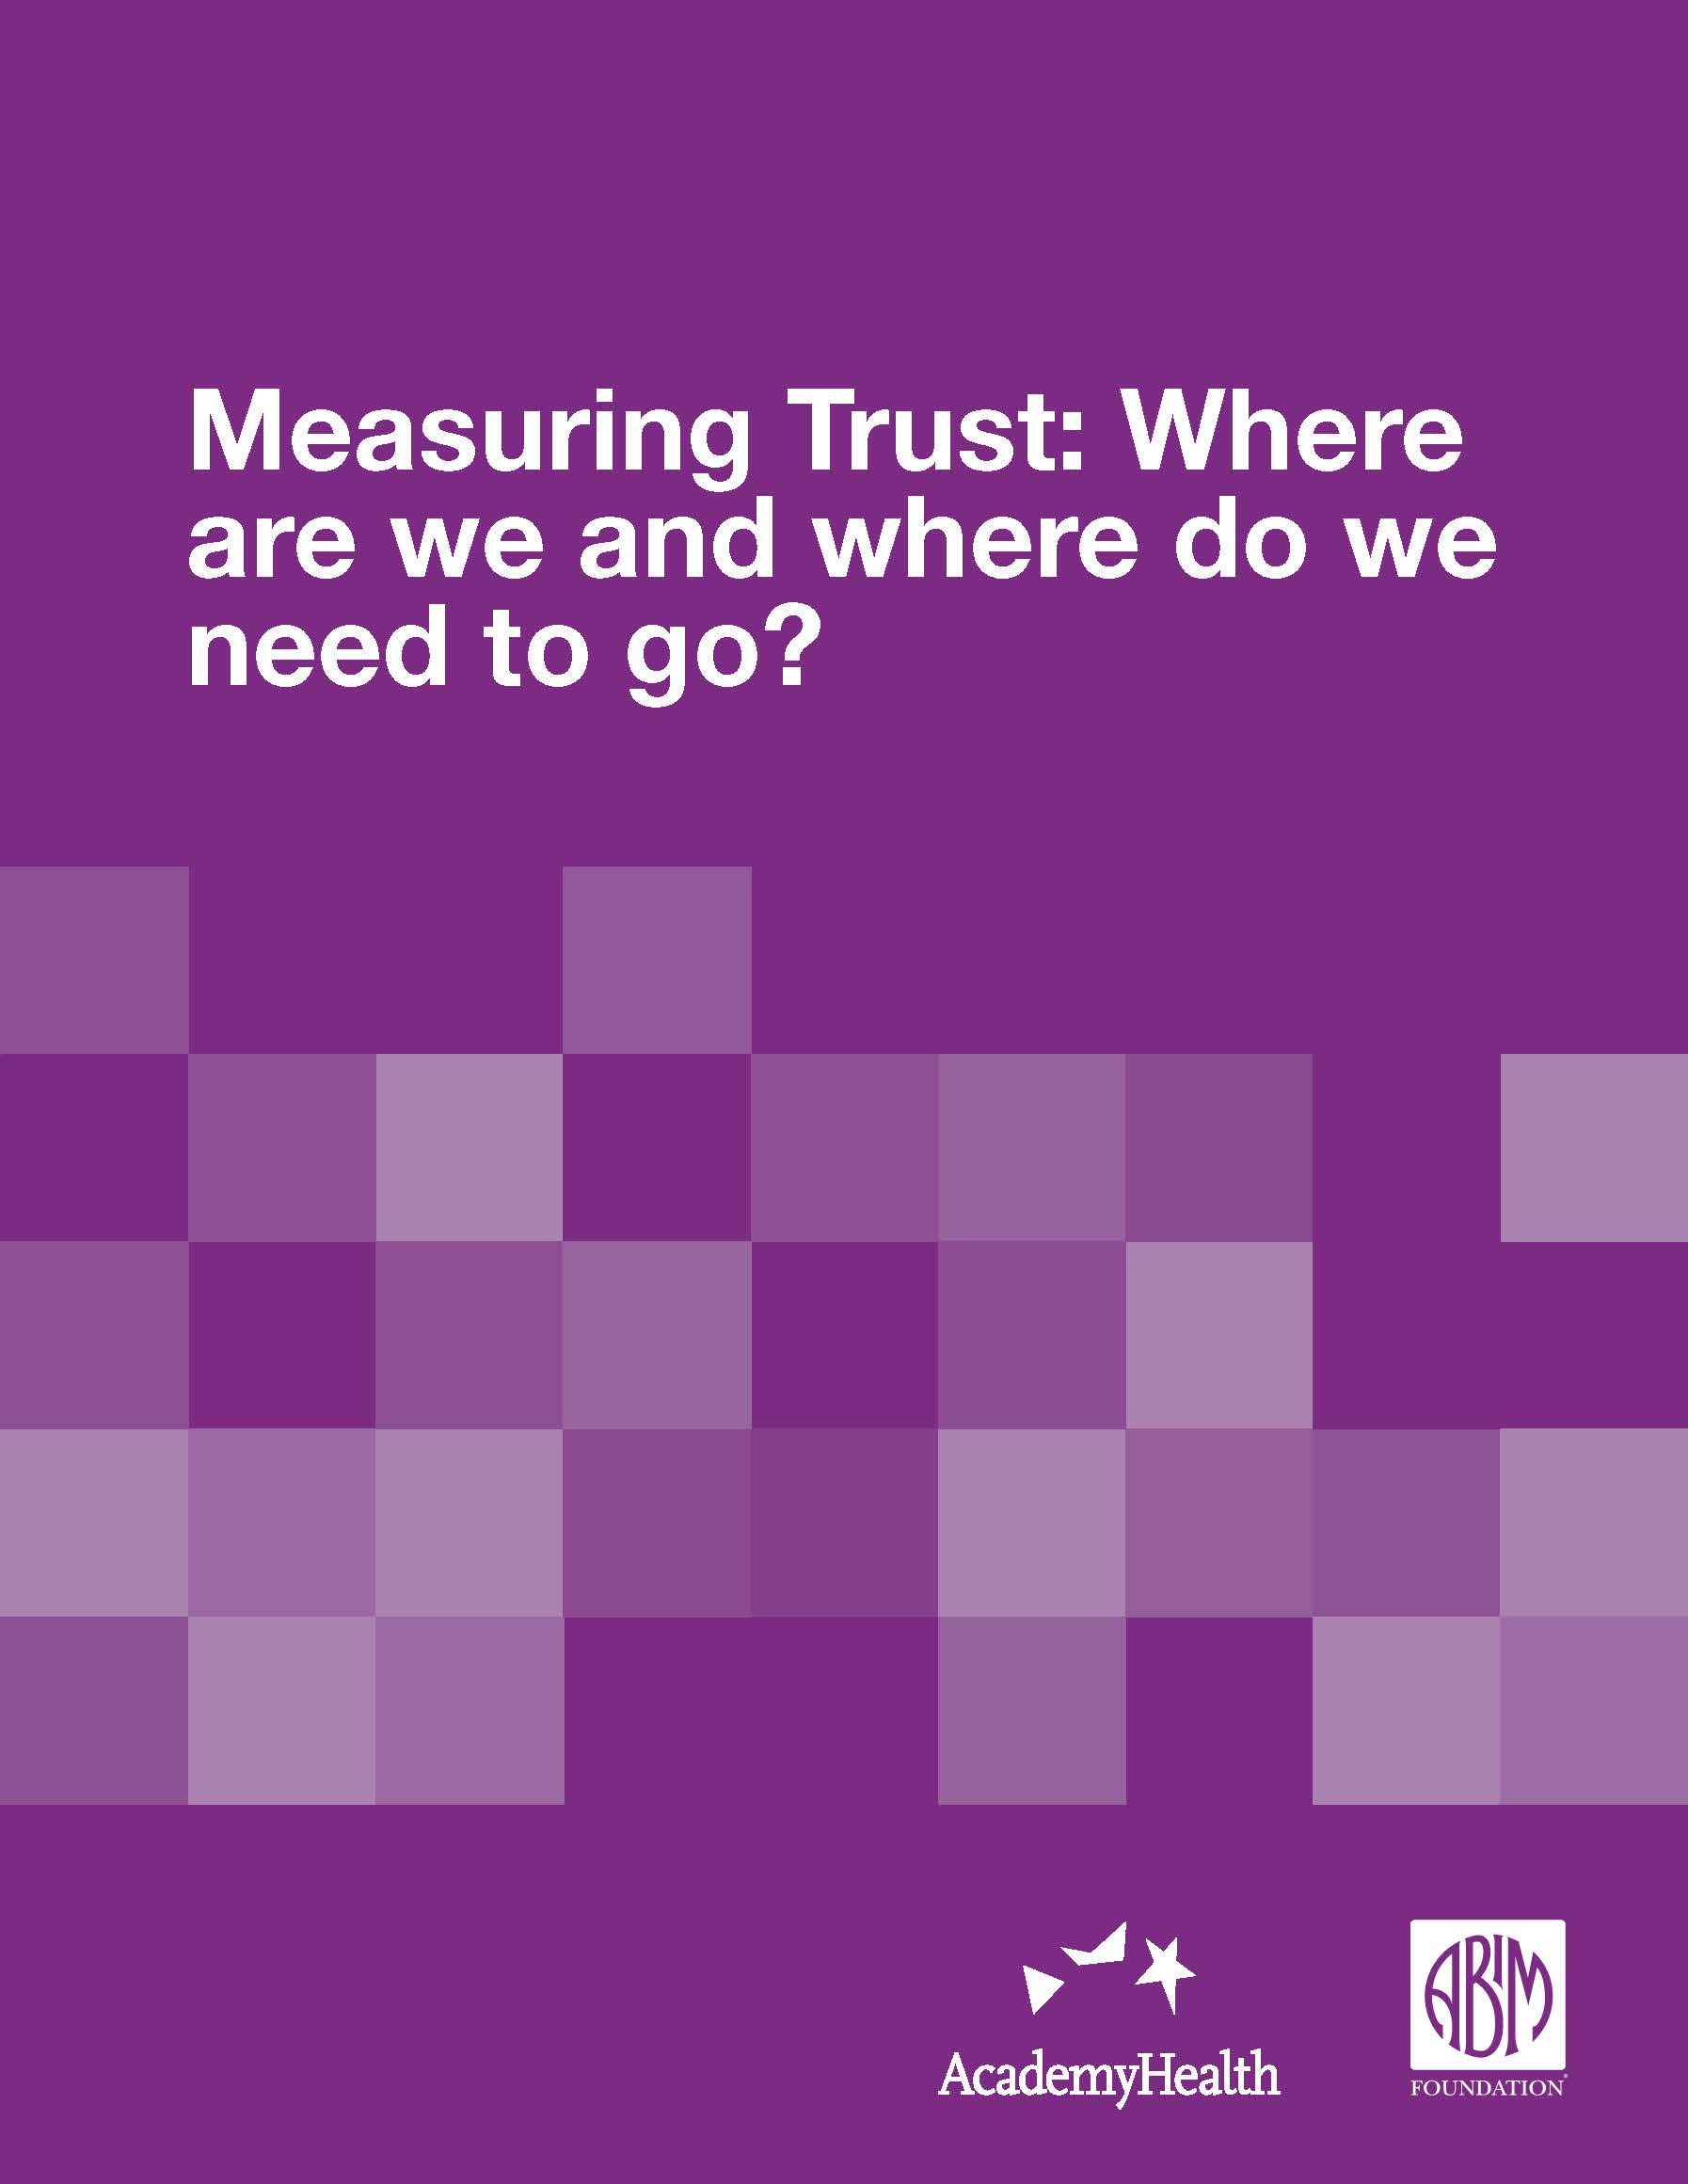 Trust measures report